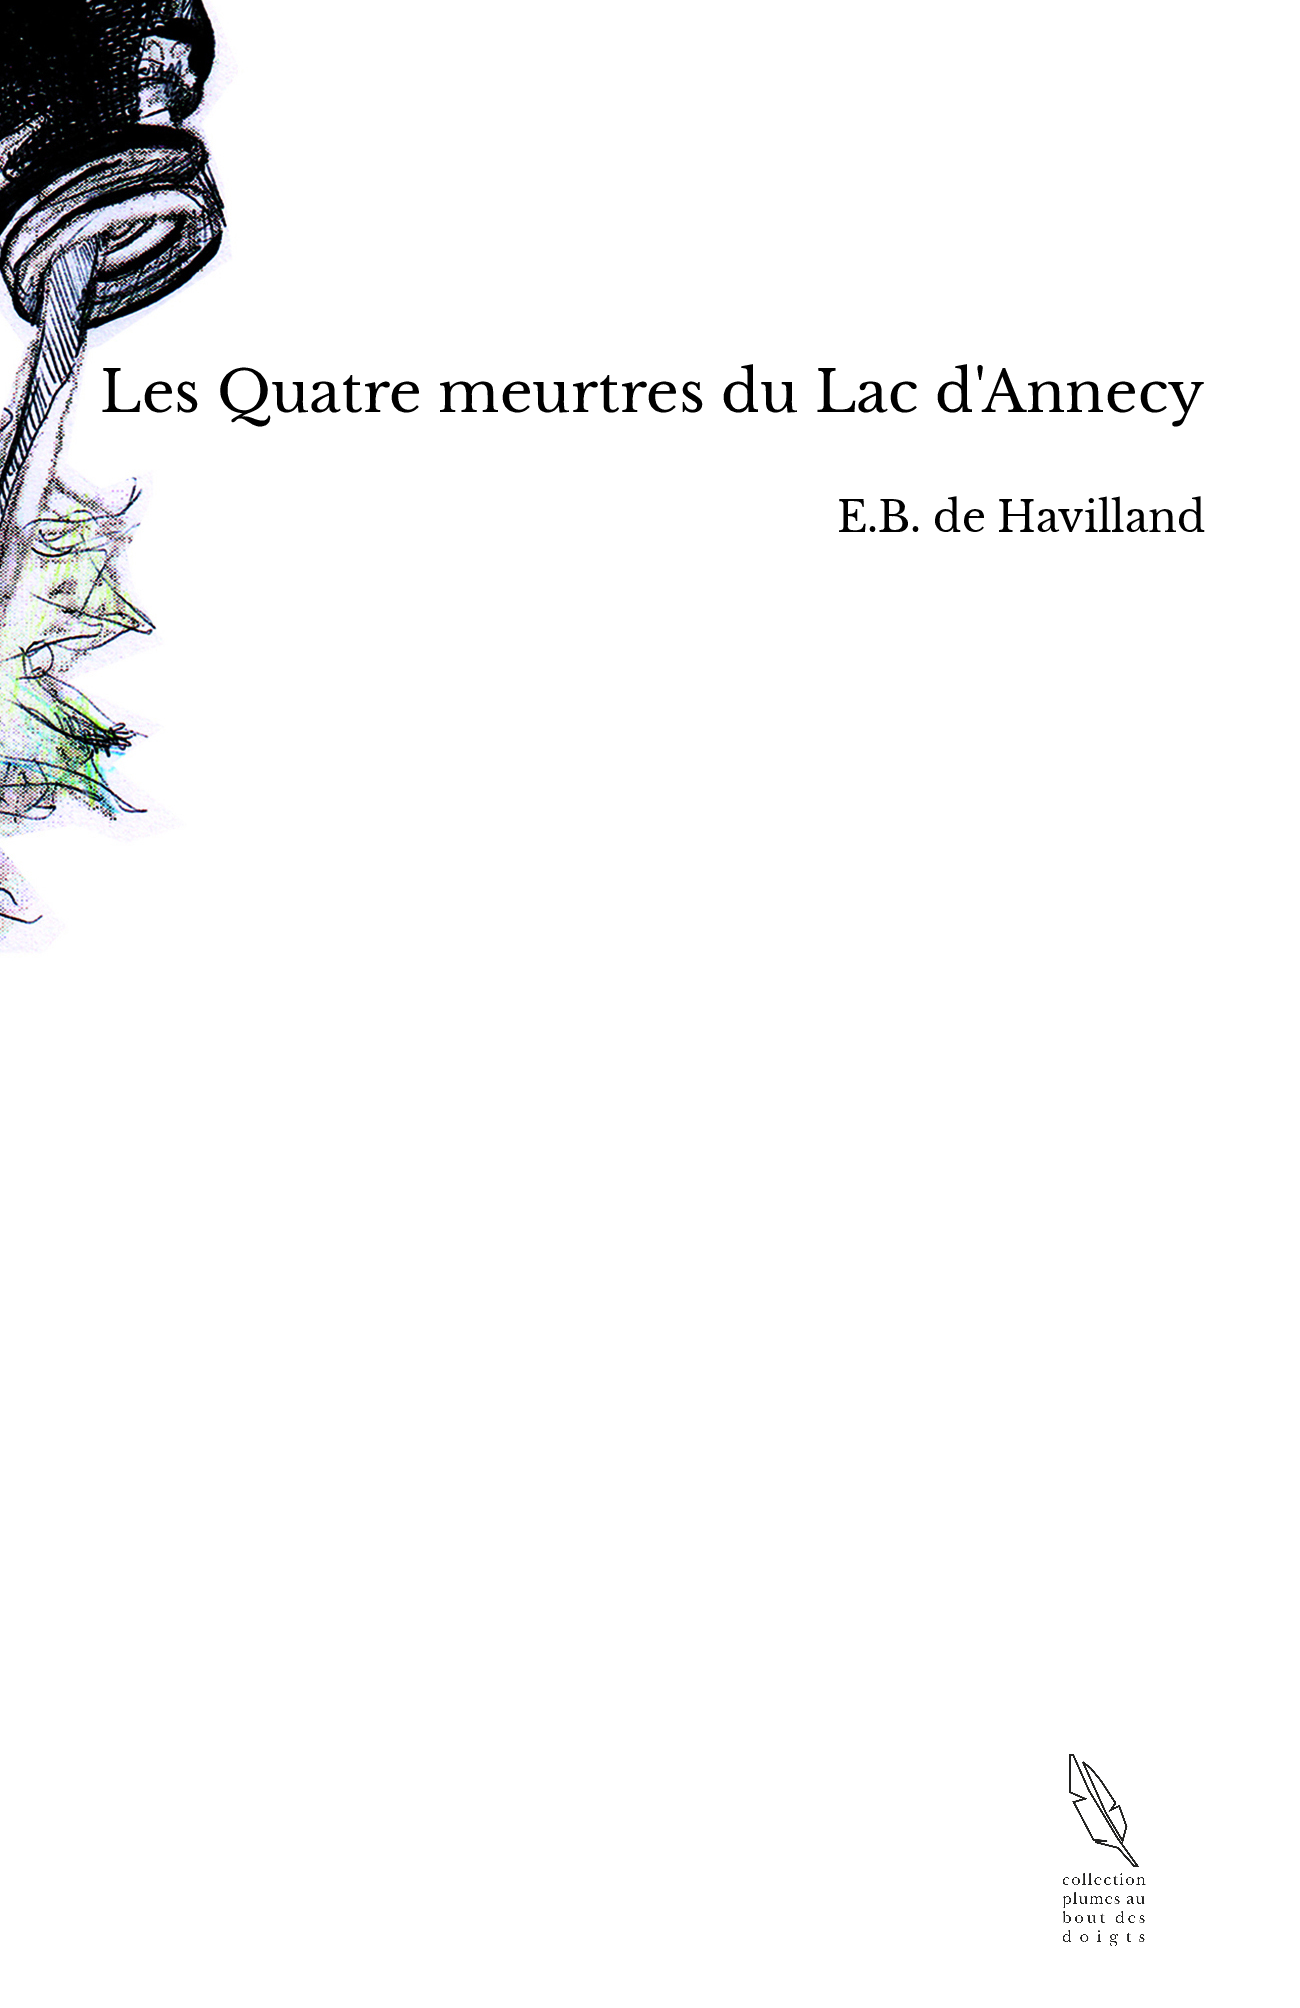 Les Quatre meurtres du Lac d'Annecy